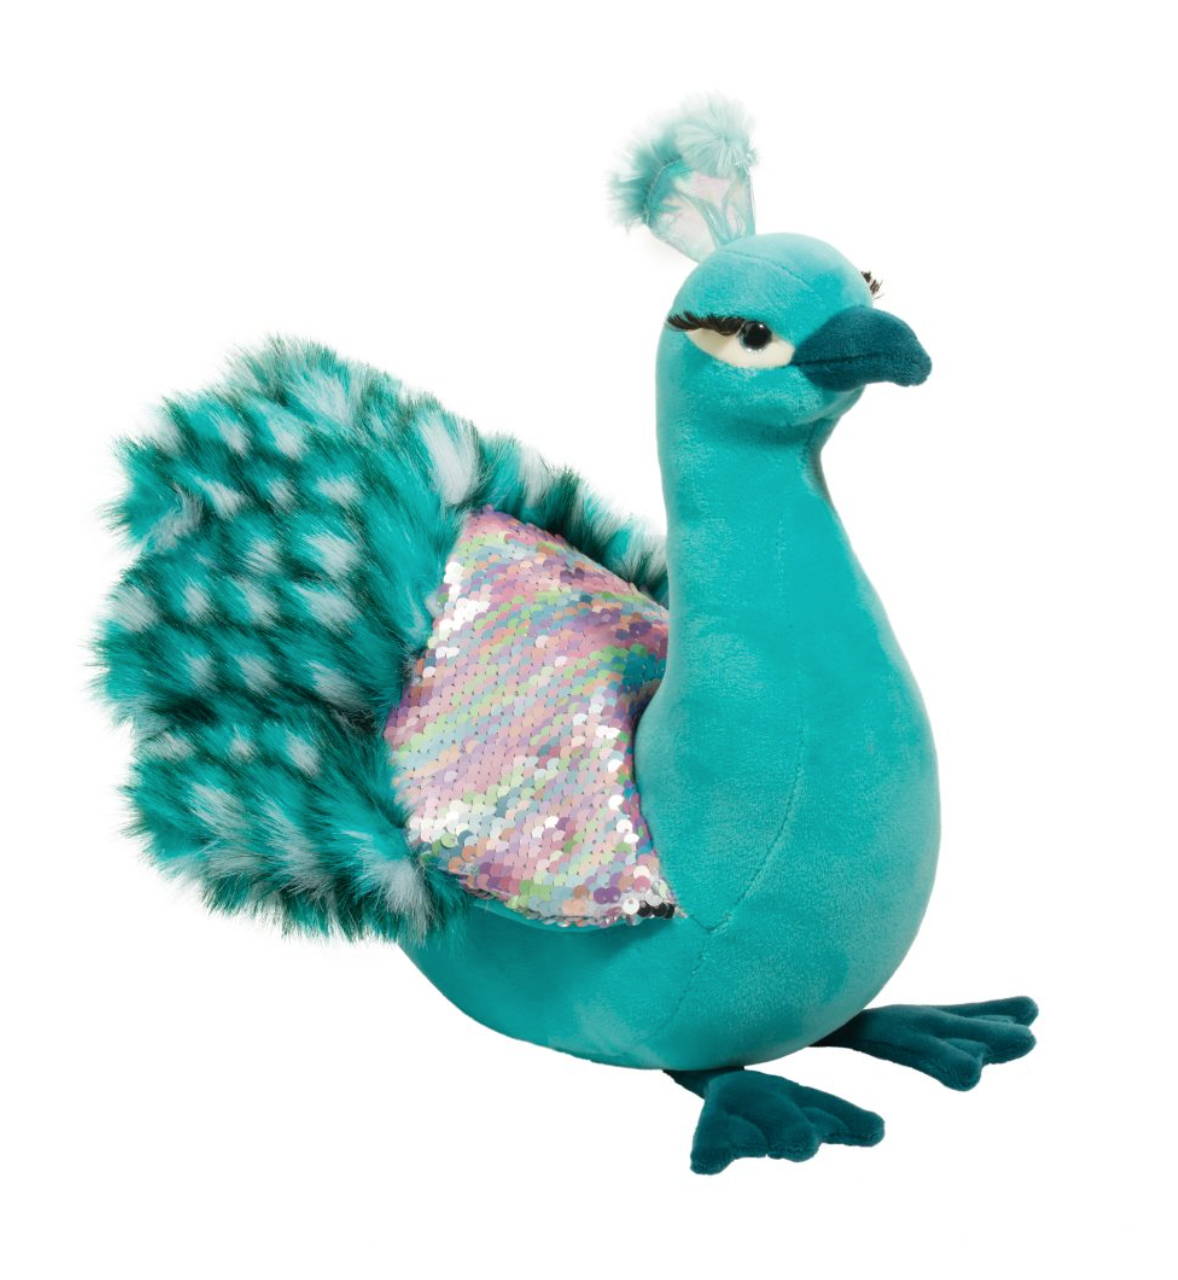 Payton the Peacock